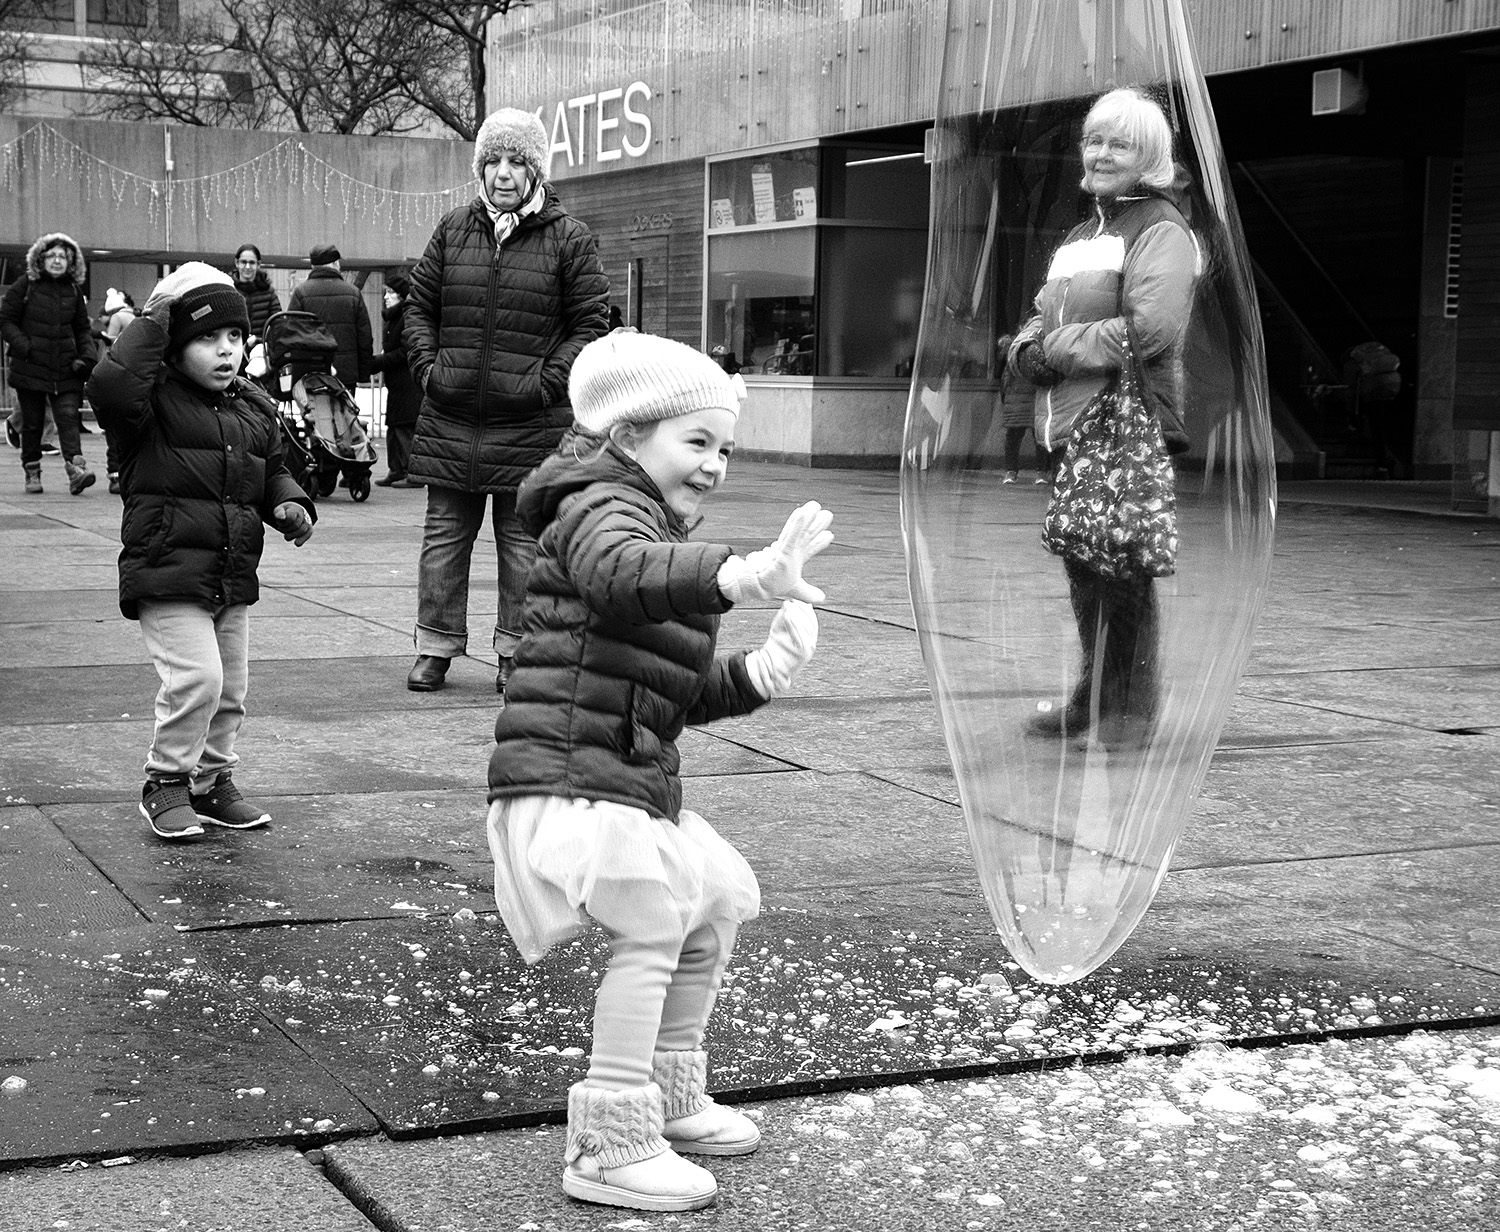   Joy is just a bubble away  